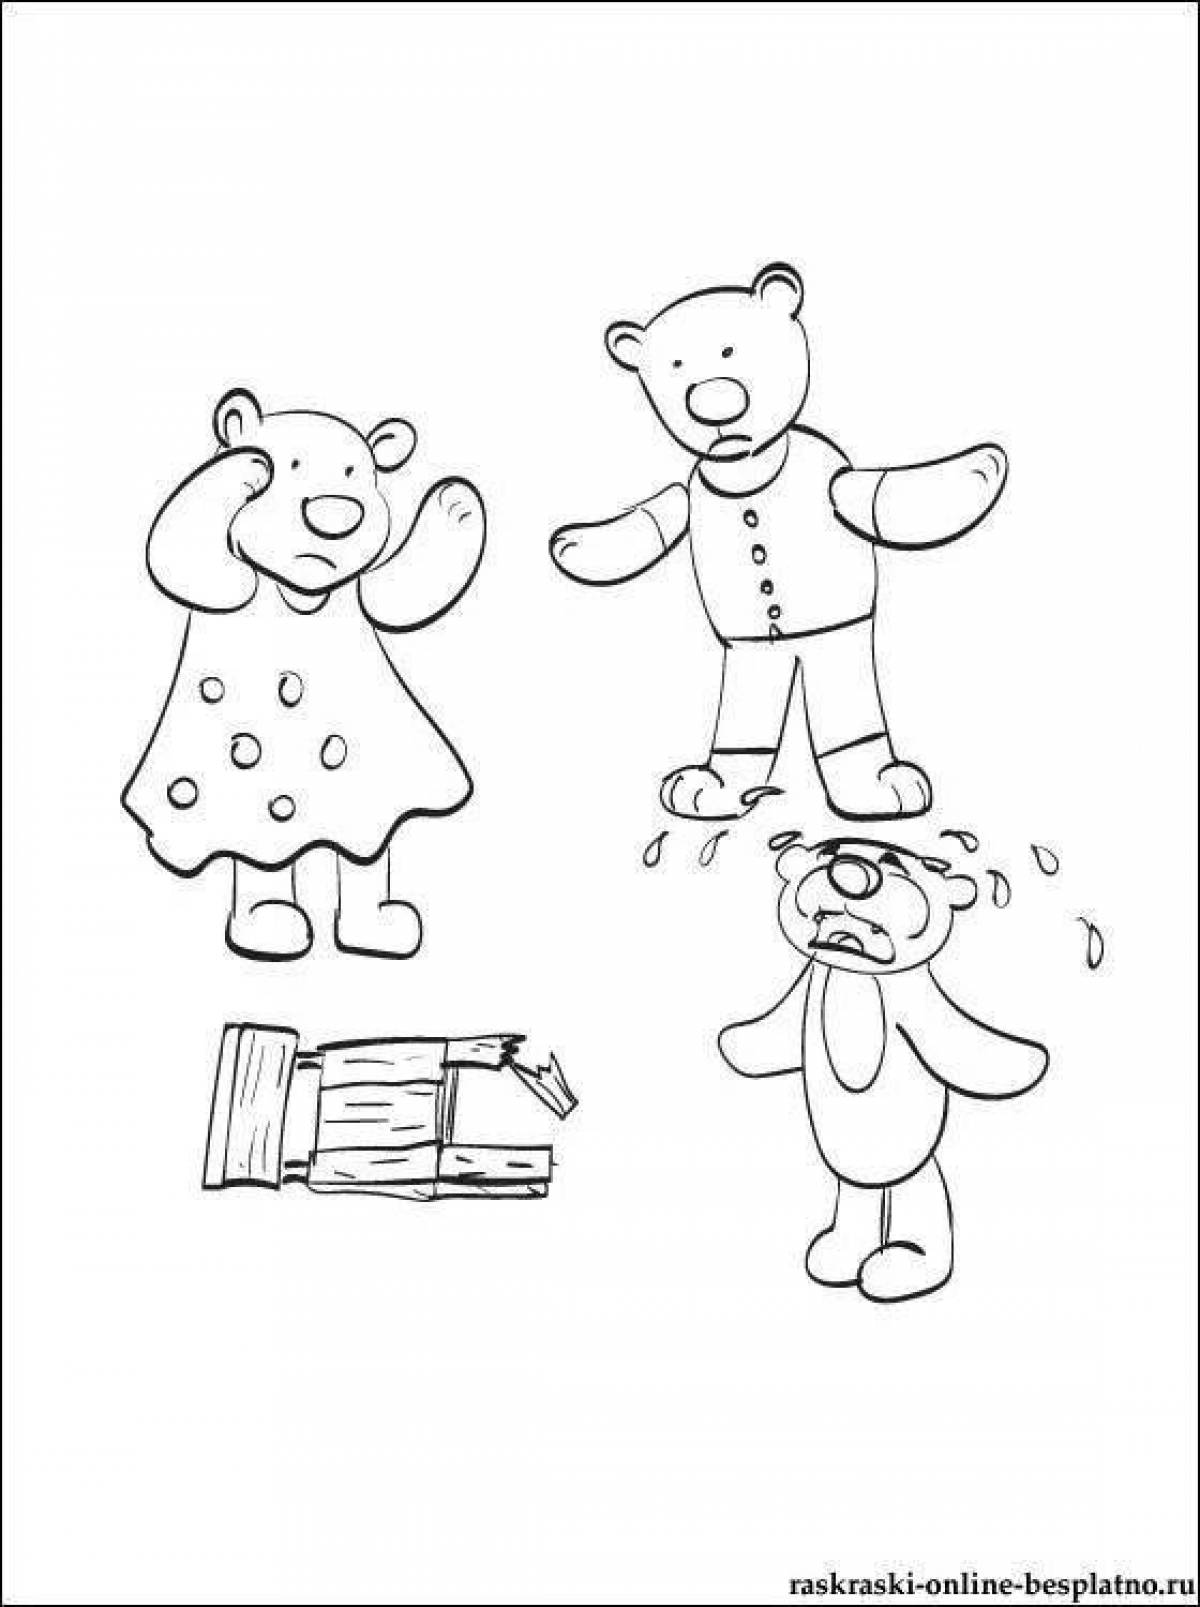 Три медведя раскраска для малышей